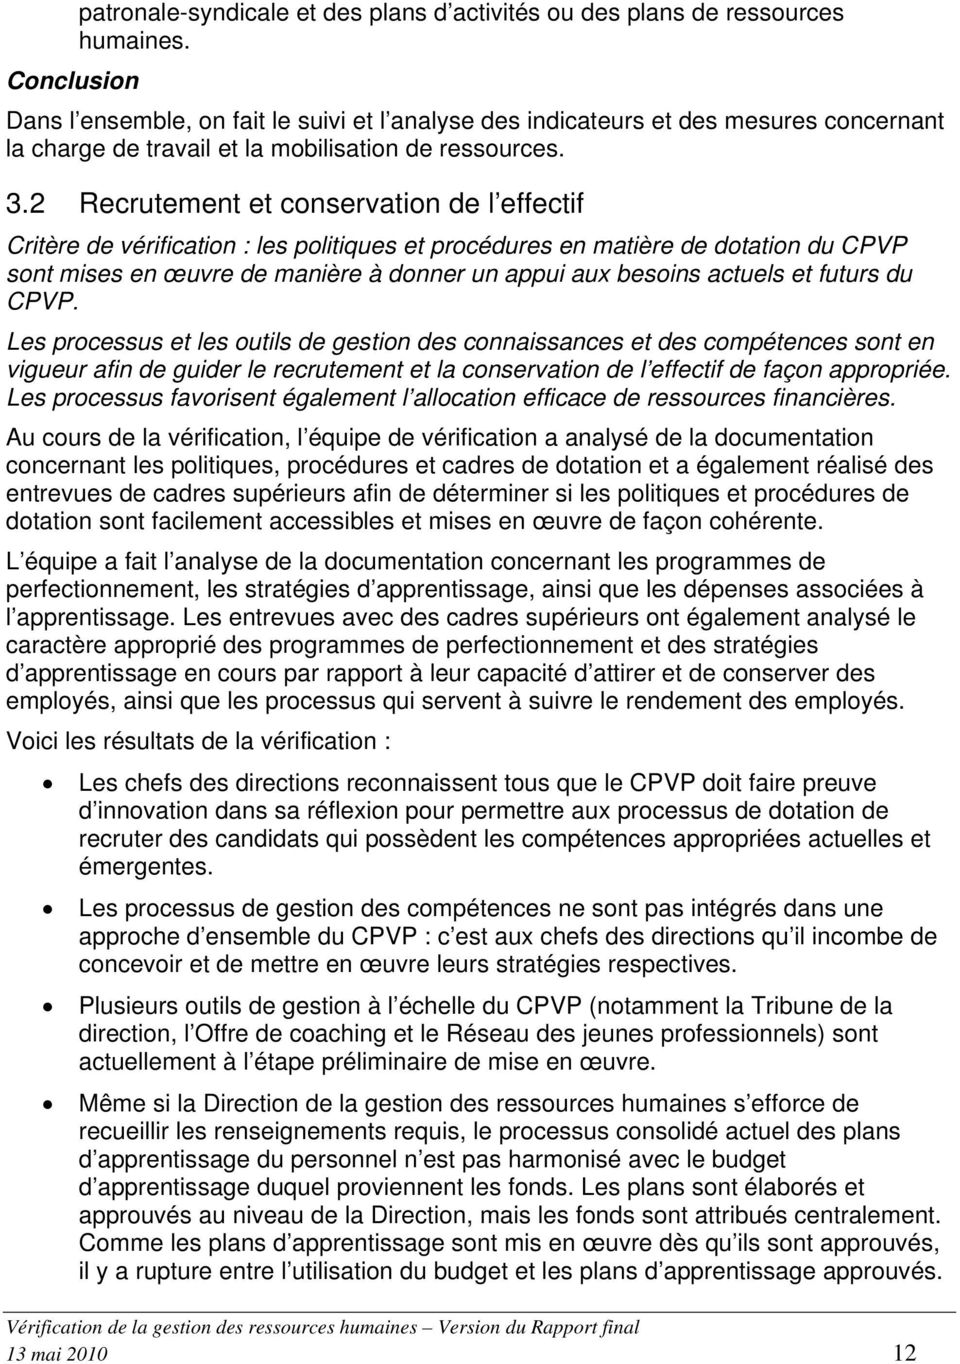 2 Recrutement et conservation de l effectif Critère de vérification : les politiques et procédures en matière de dotation du CPVP sont mises en œuvre de manière à donner un appui aux besoins actuels